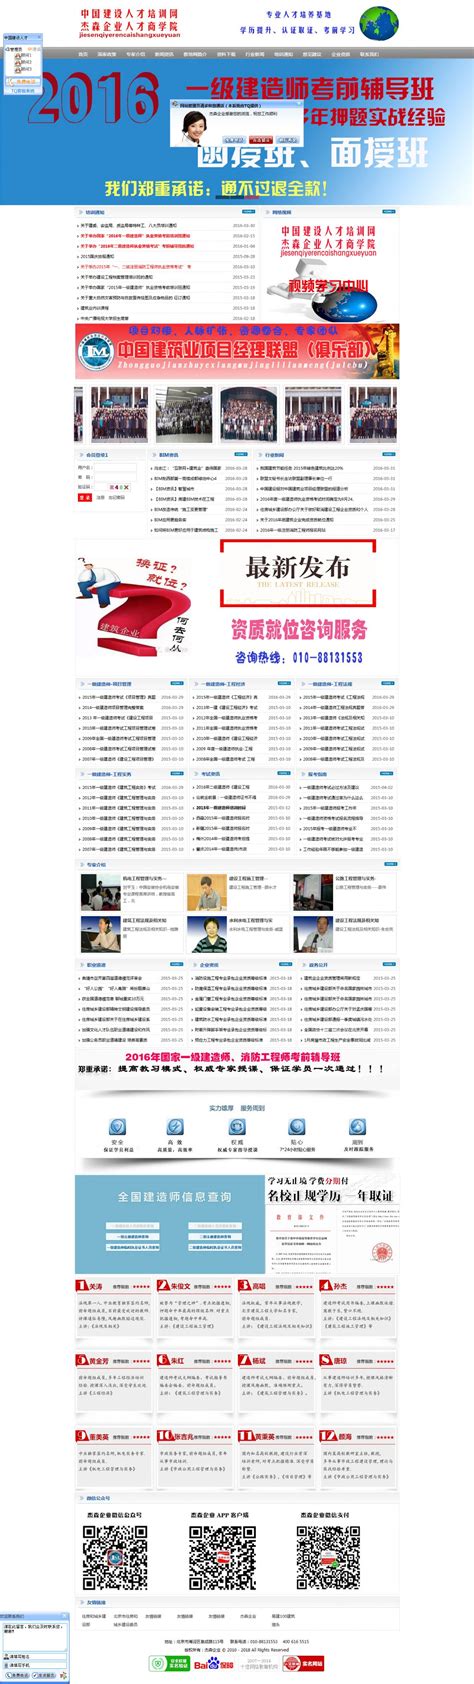 中国建设人才官方网站